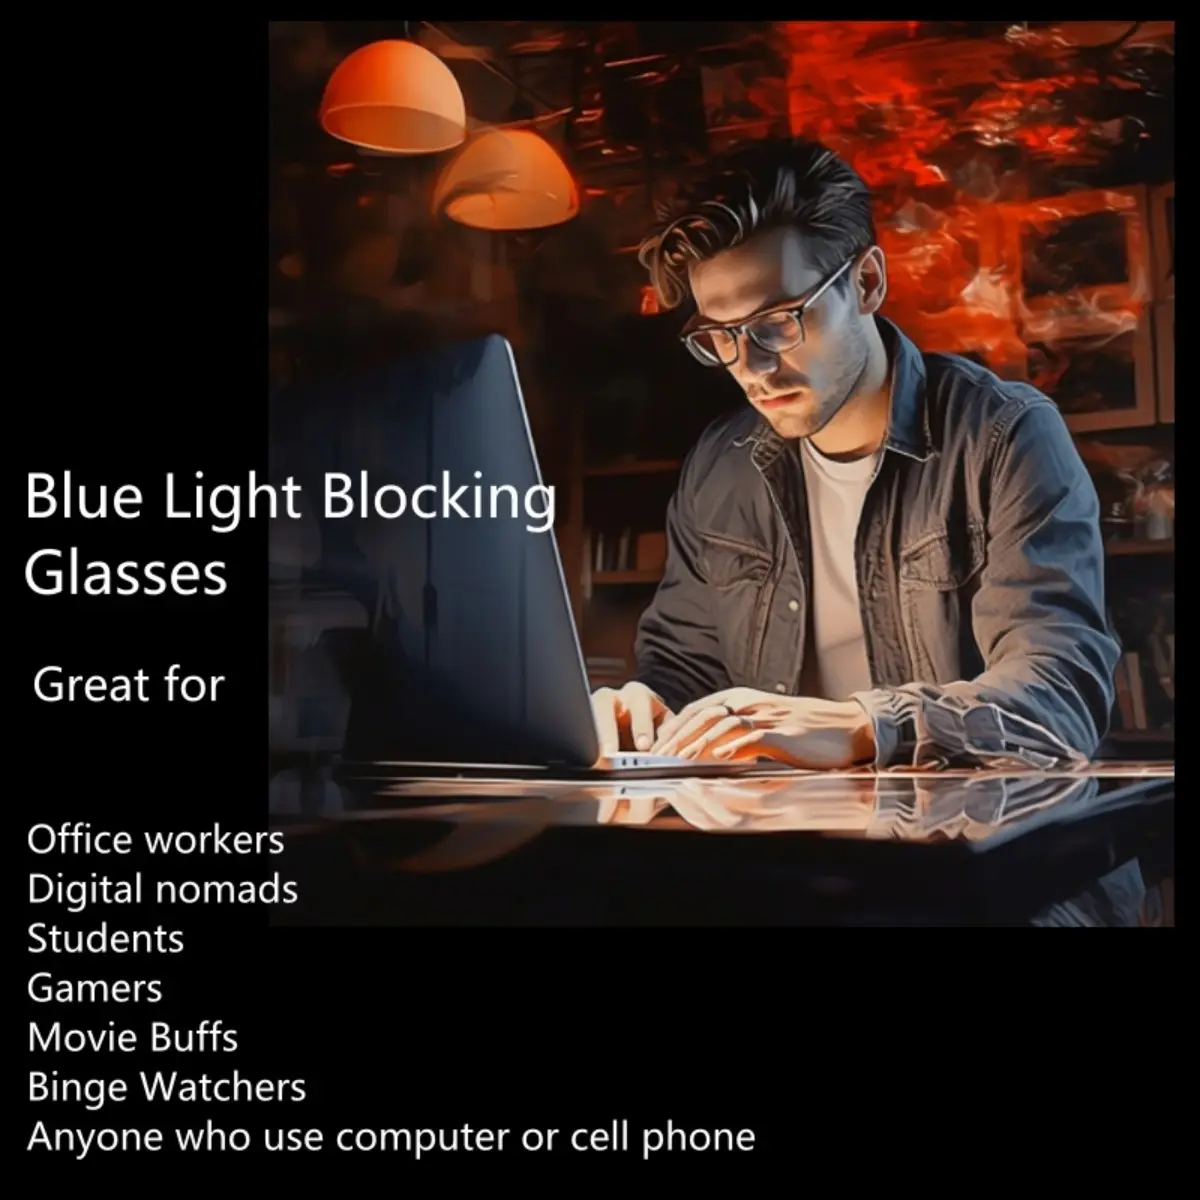 แว่นตากรอบกรอบสีเหลืองอําพันสีส้ม 99.9% ป้องกันแสงสีฟ้าเพื่อการนอนหลับที่มีความไวต่อแสงแสงสีฟ้า